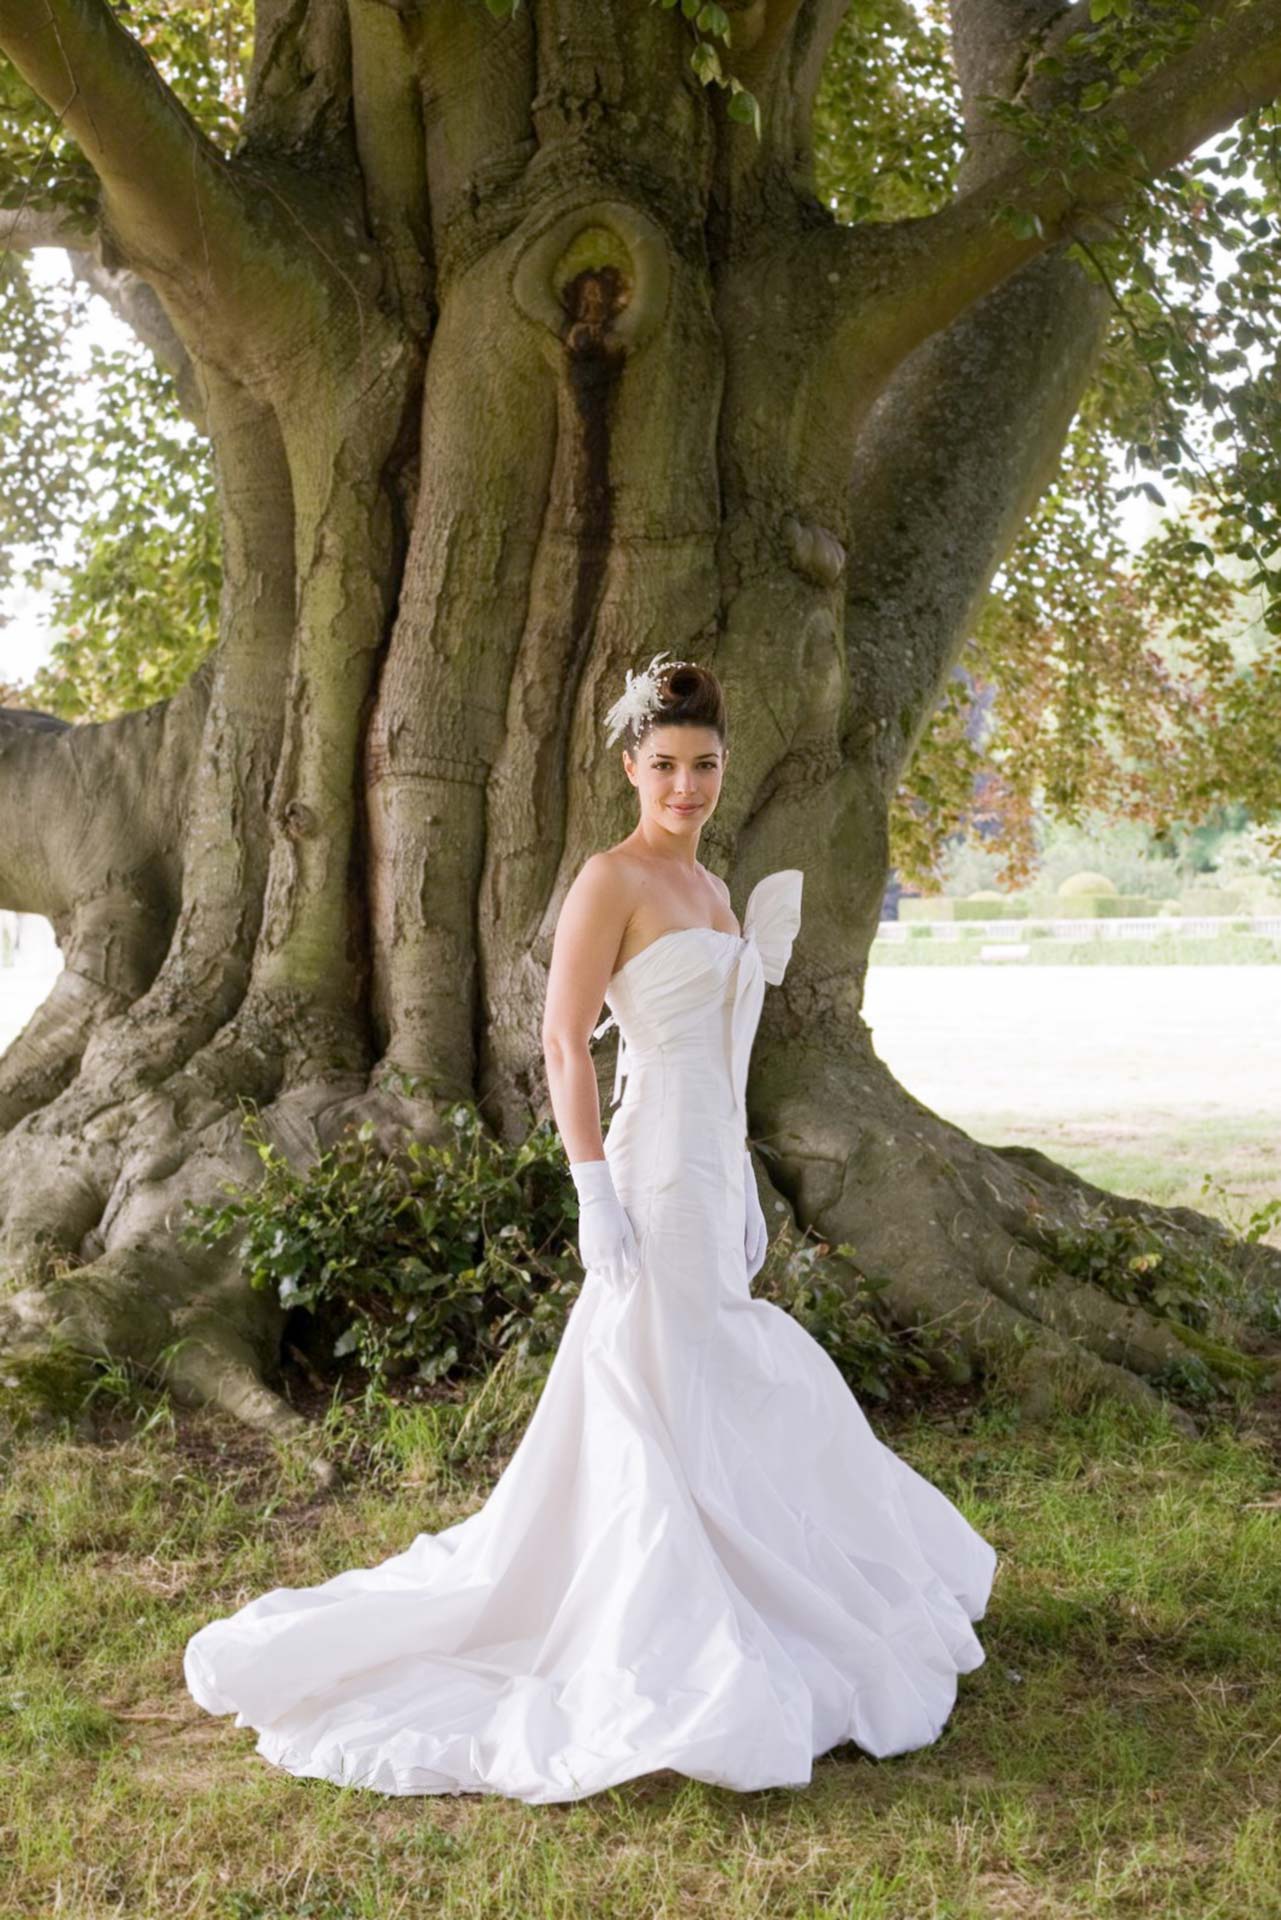 La mariée pause pour le photographe au pied d'un arbre, dans sa robe blanche.